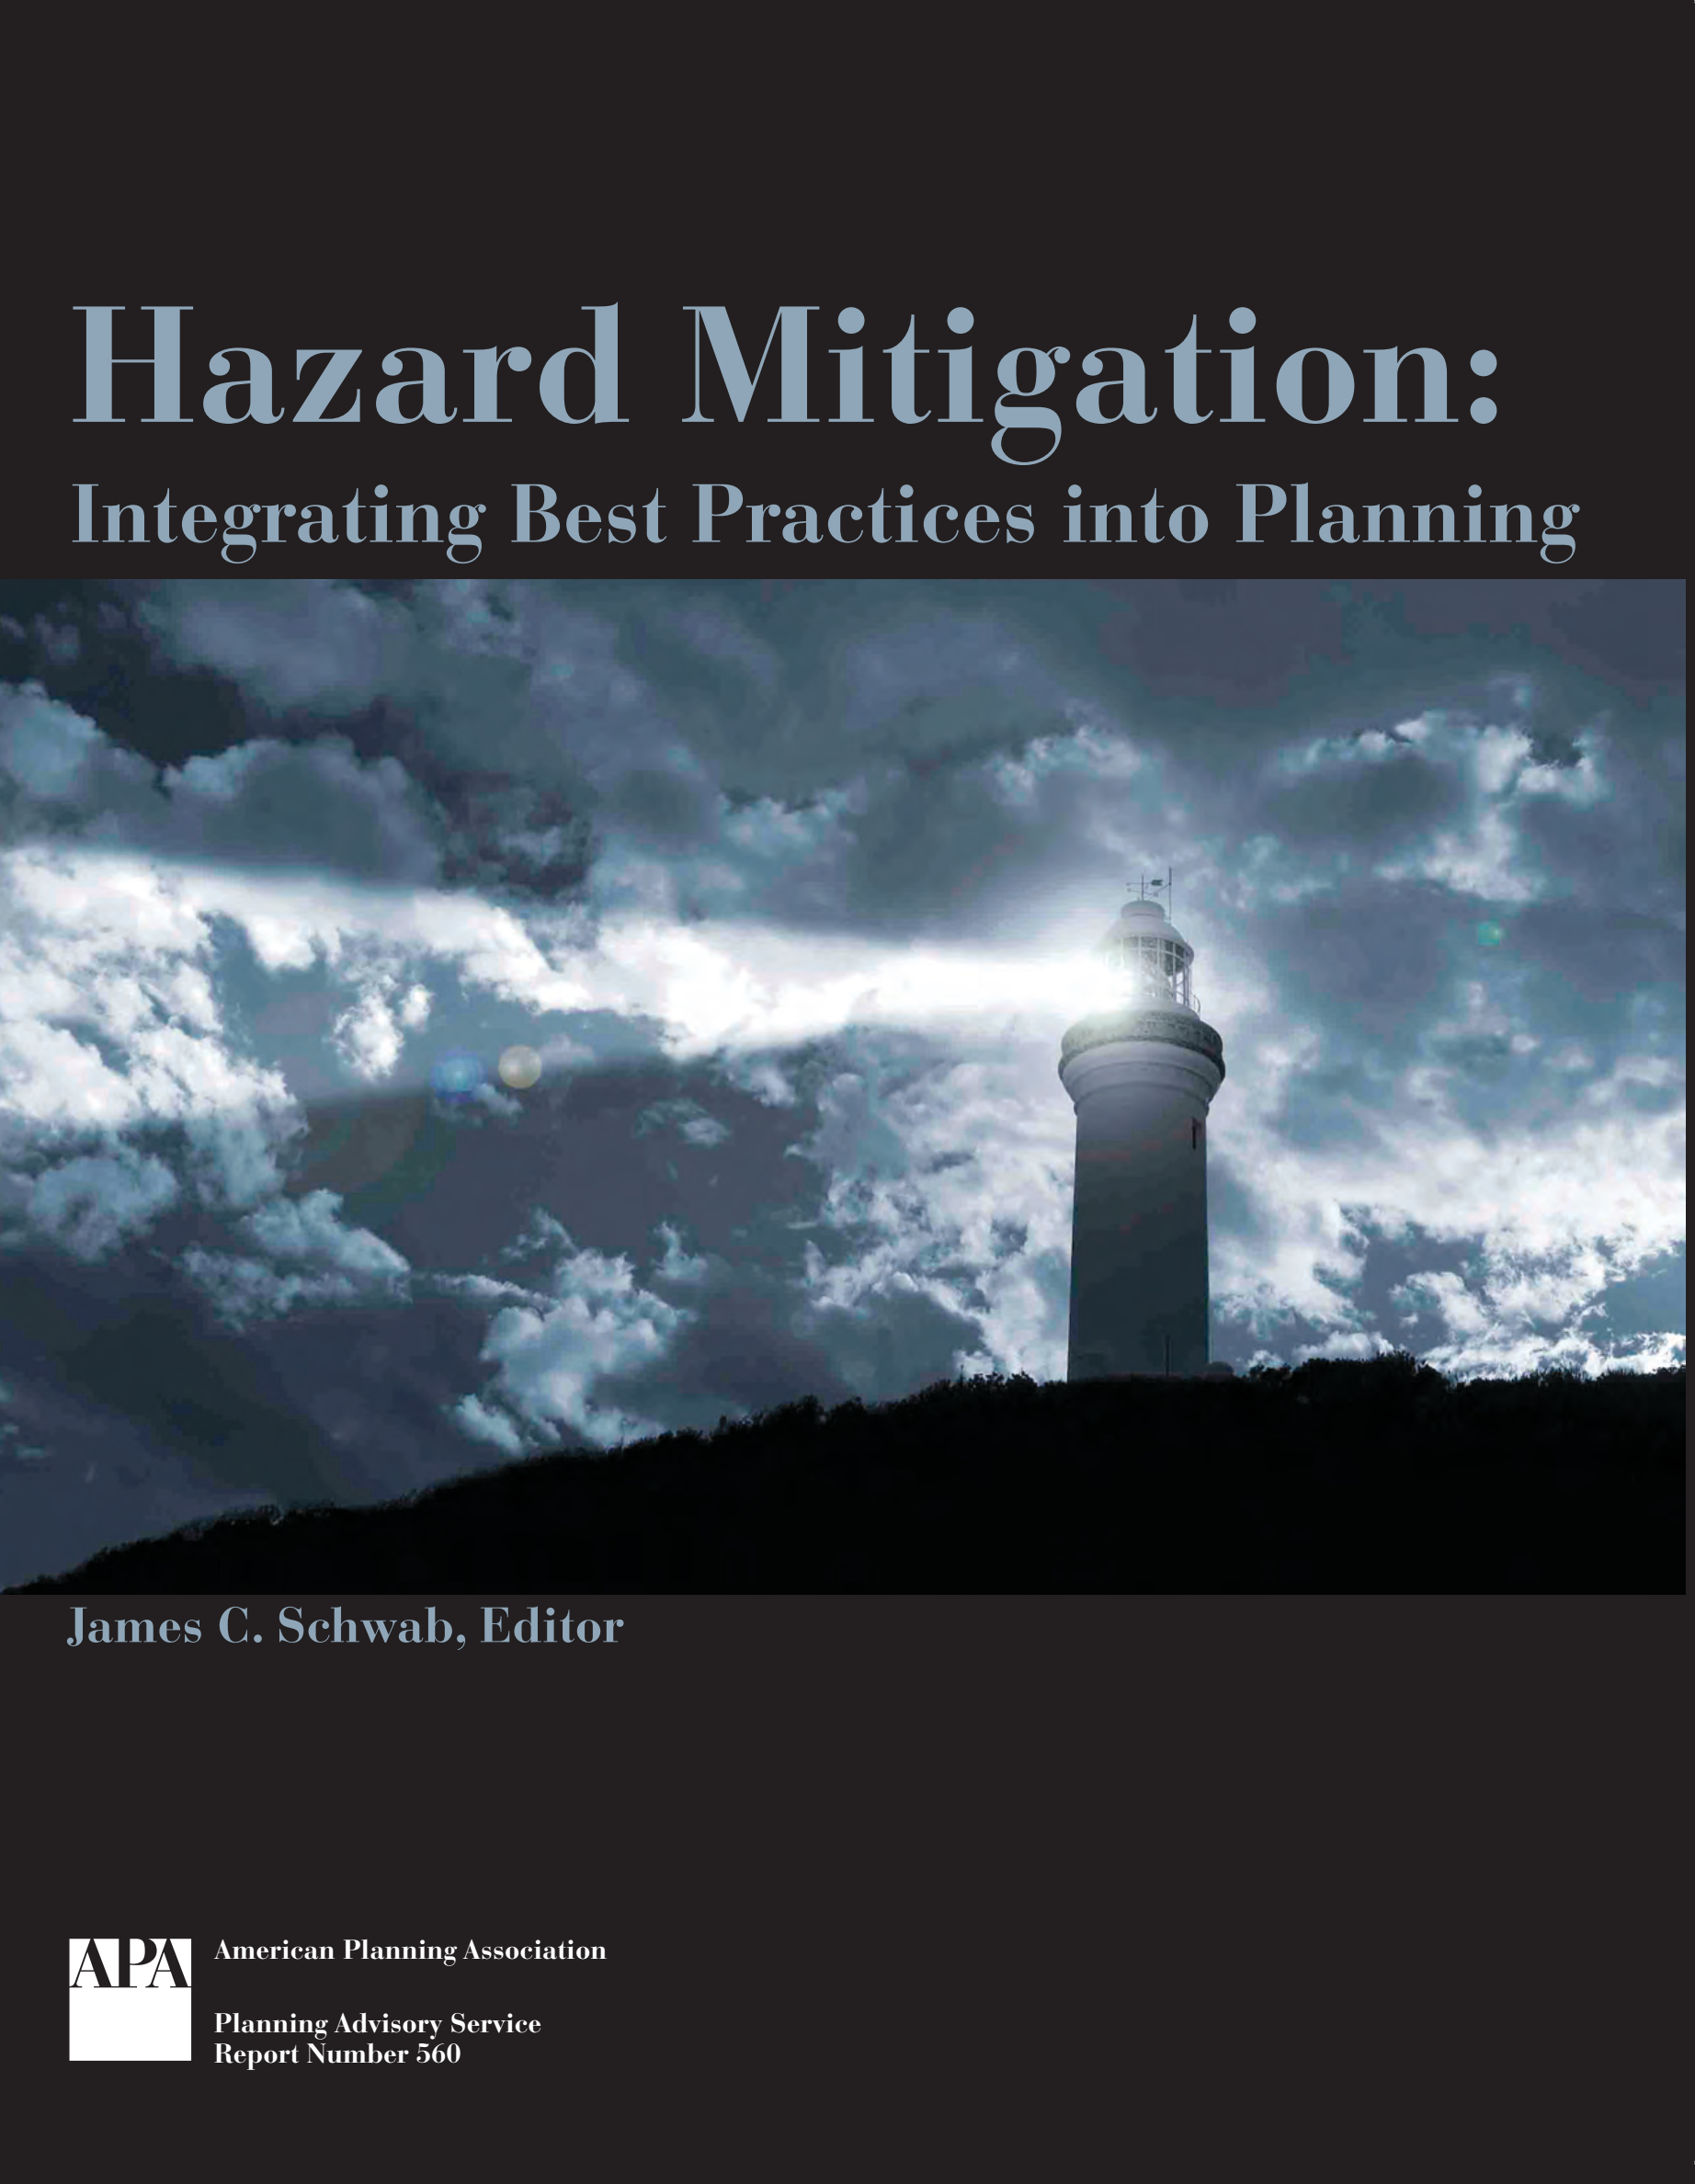 Hazard Mitigation: Best Practices